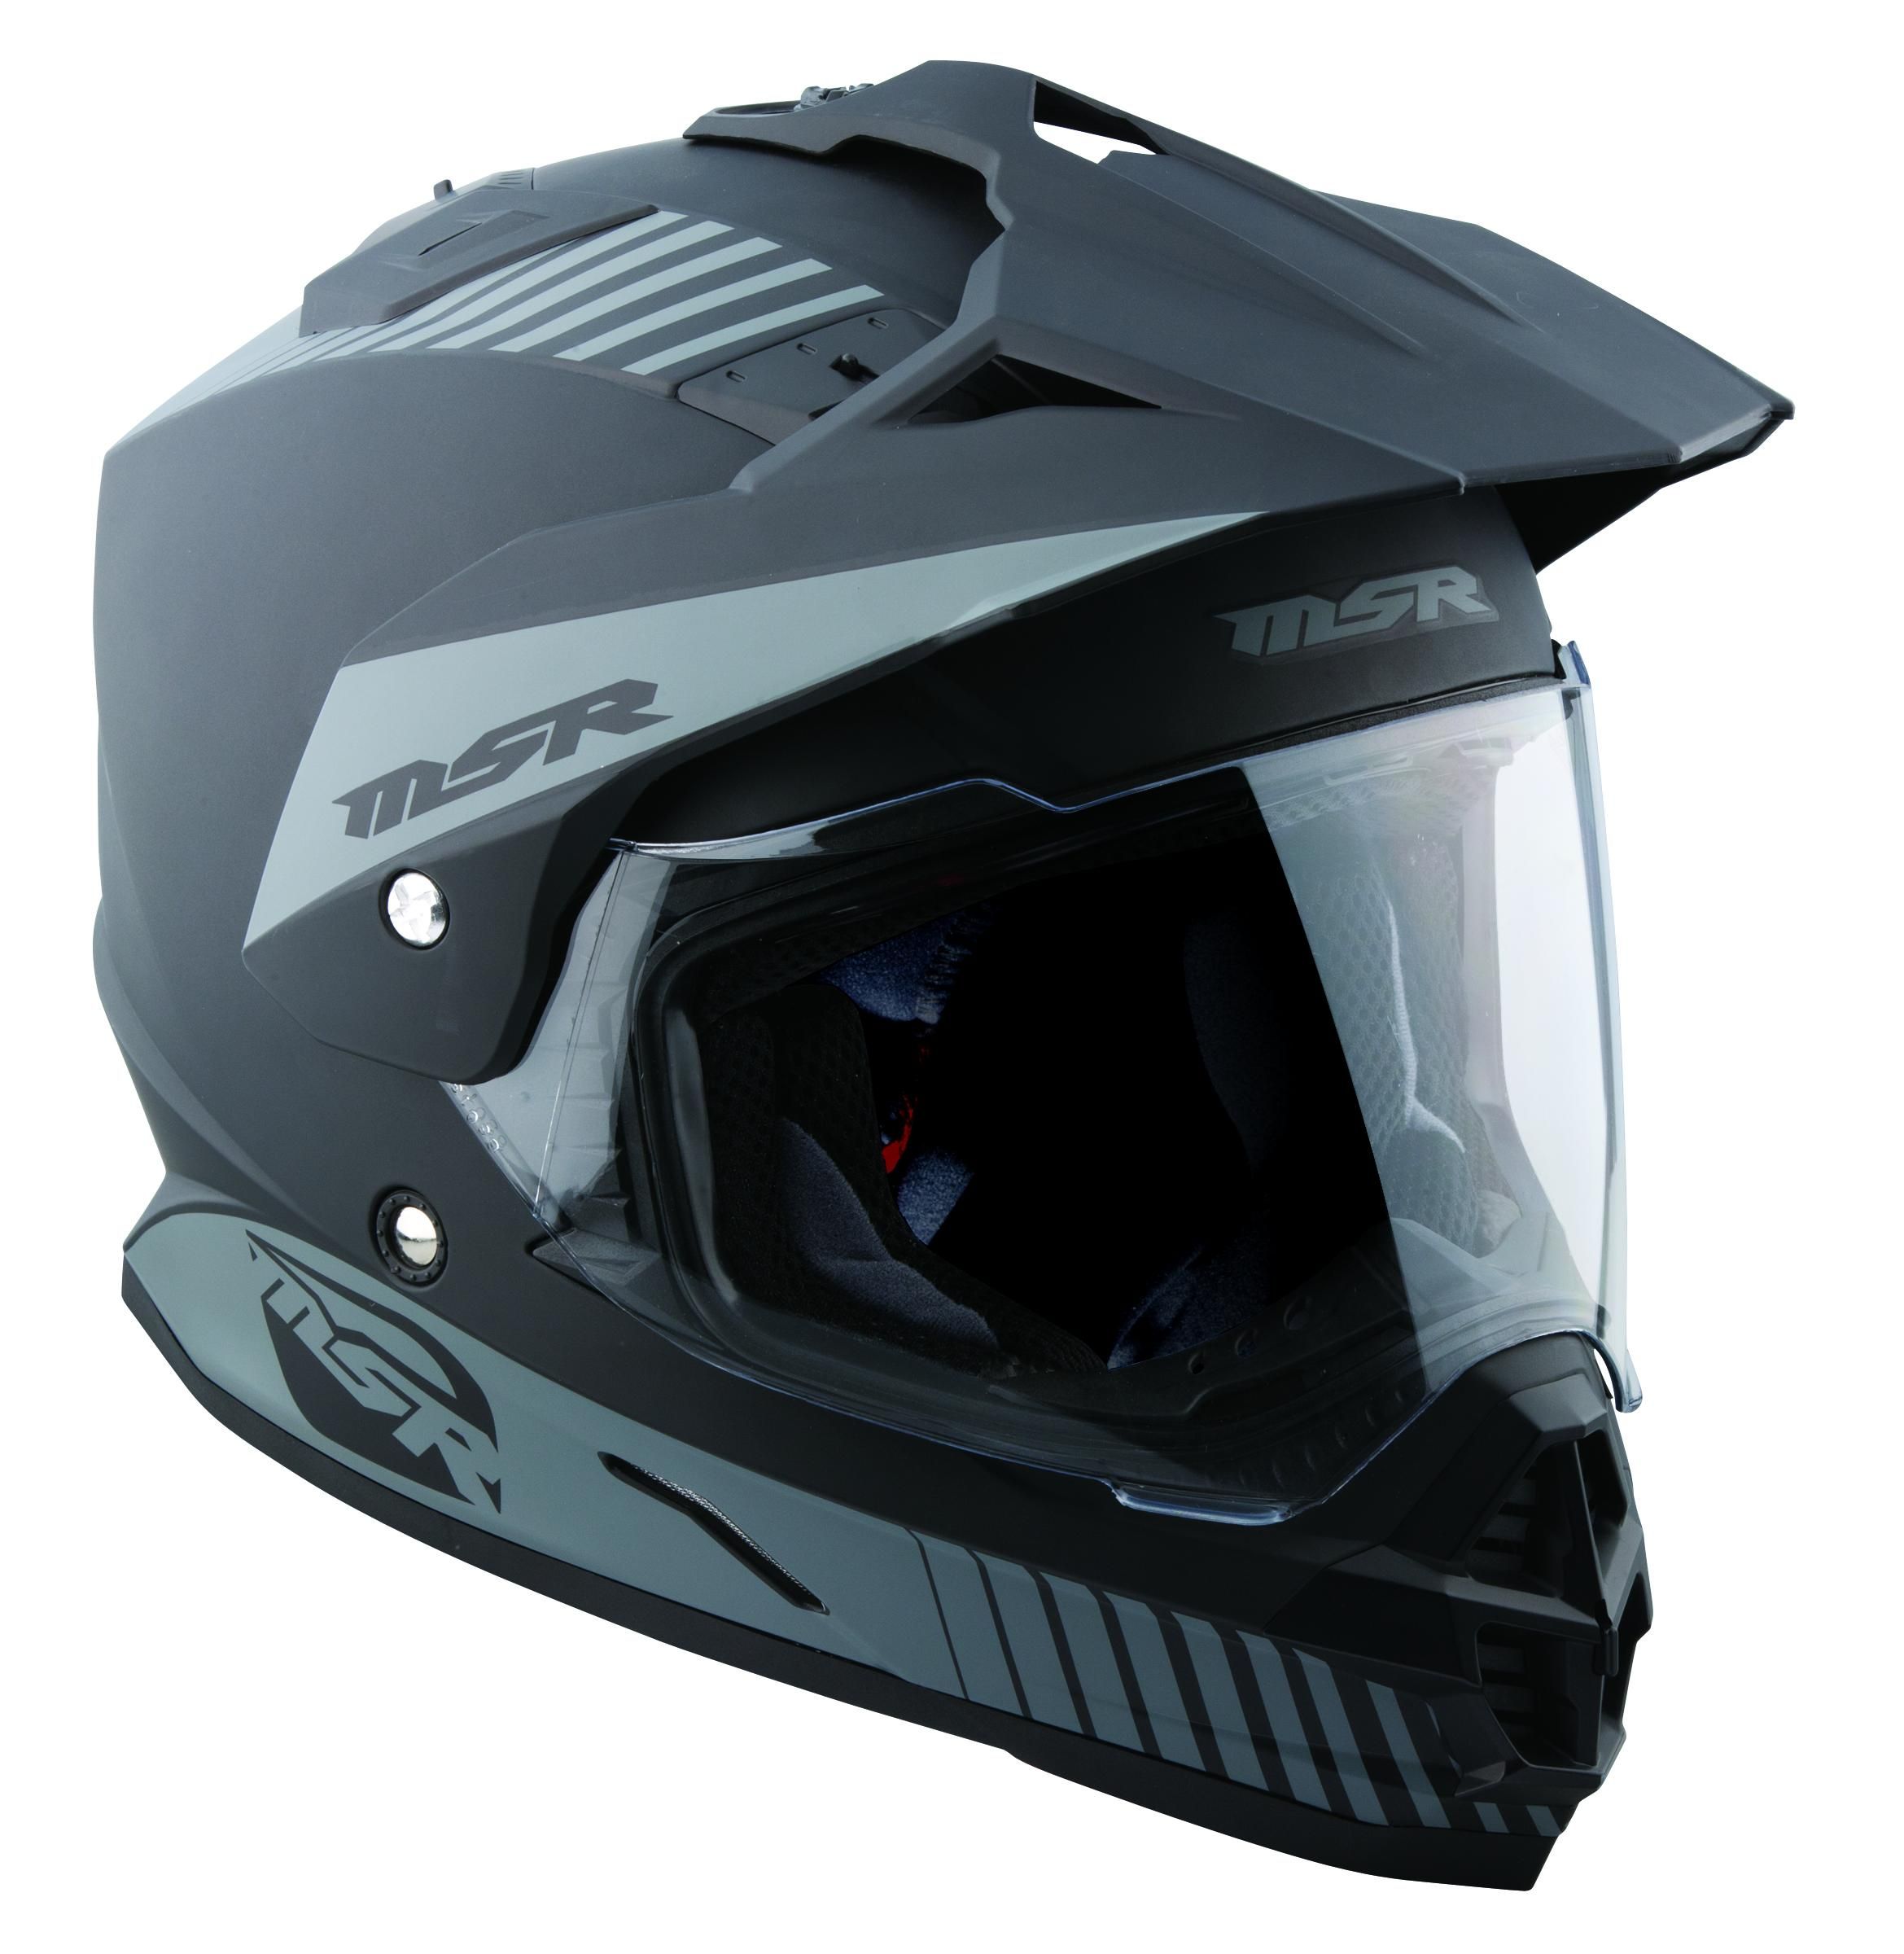 45XB-MSR-359196 Helmet Liner for M13 Xpedition Helmet - Sm